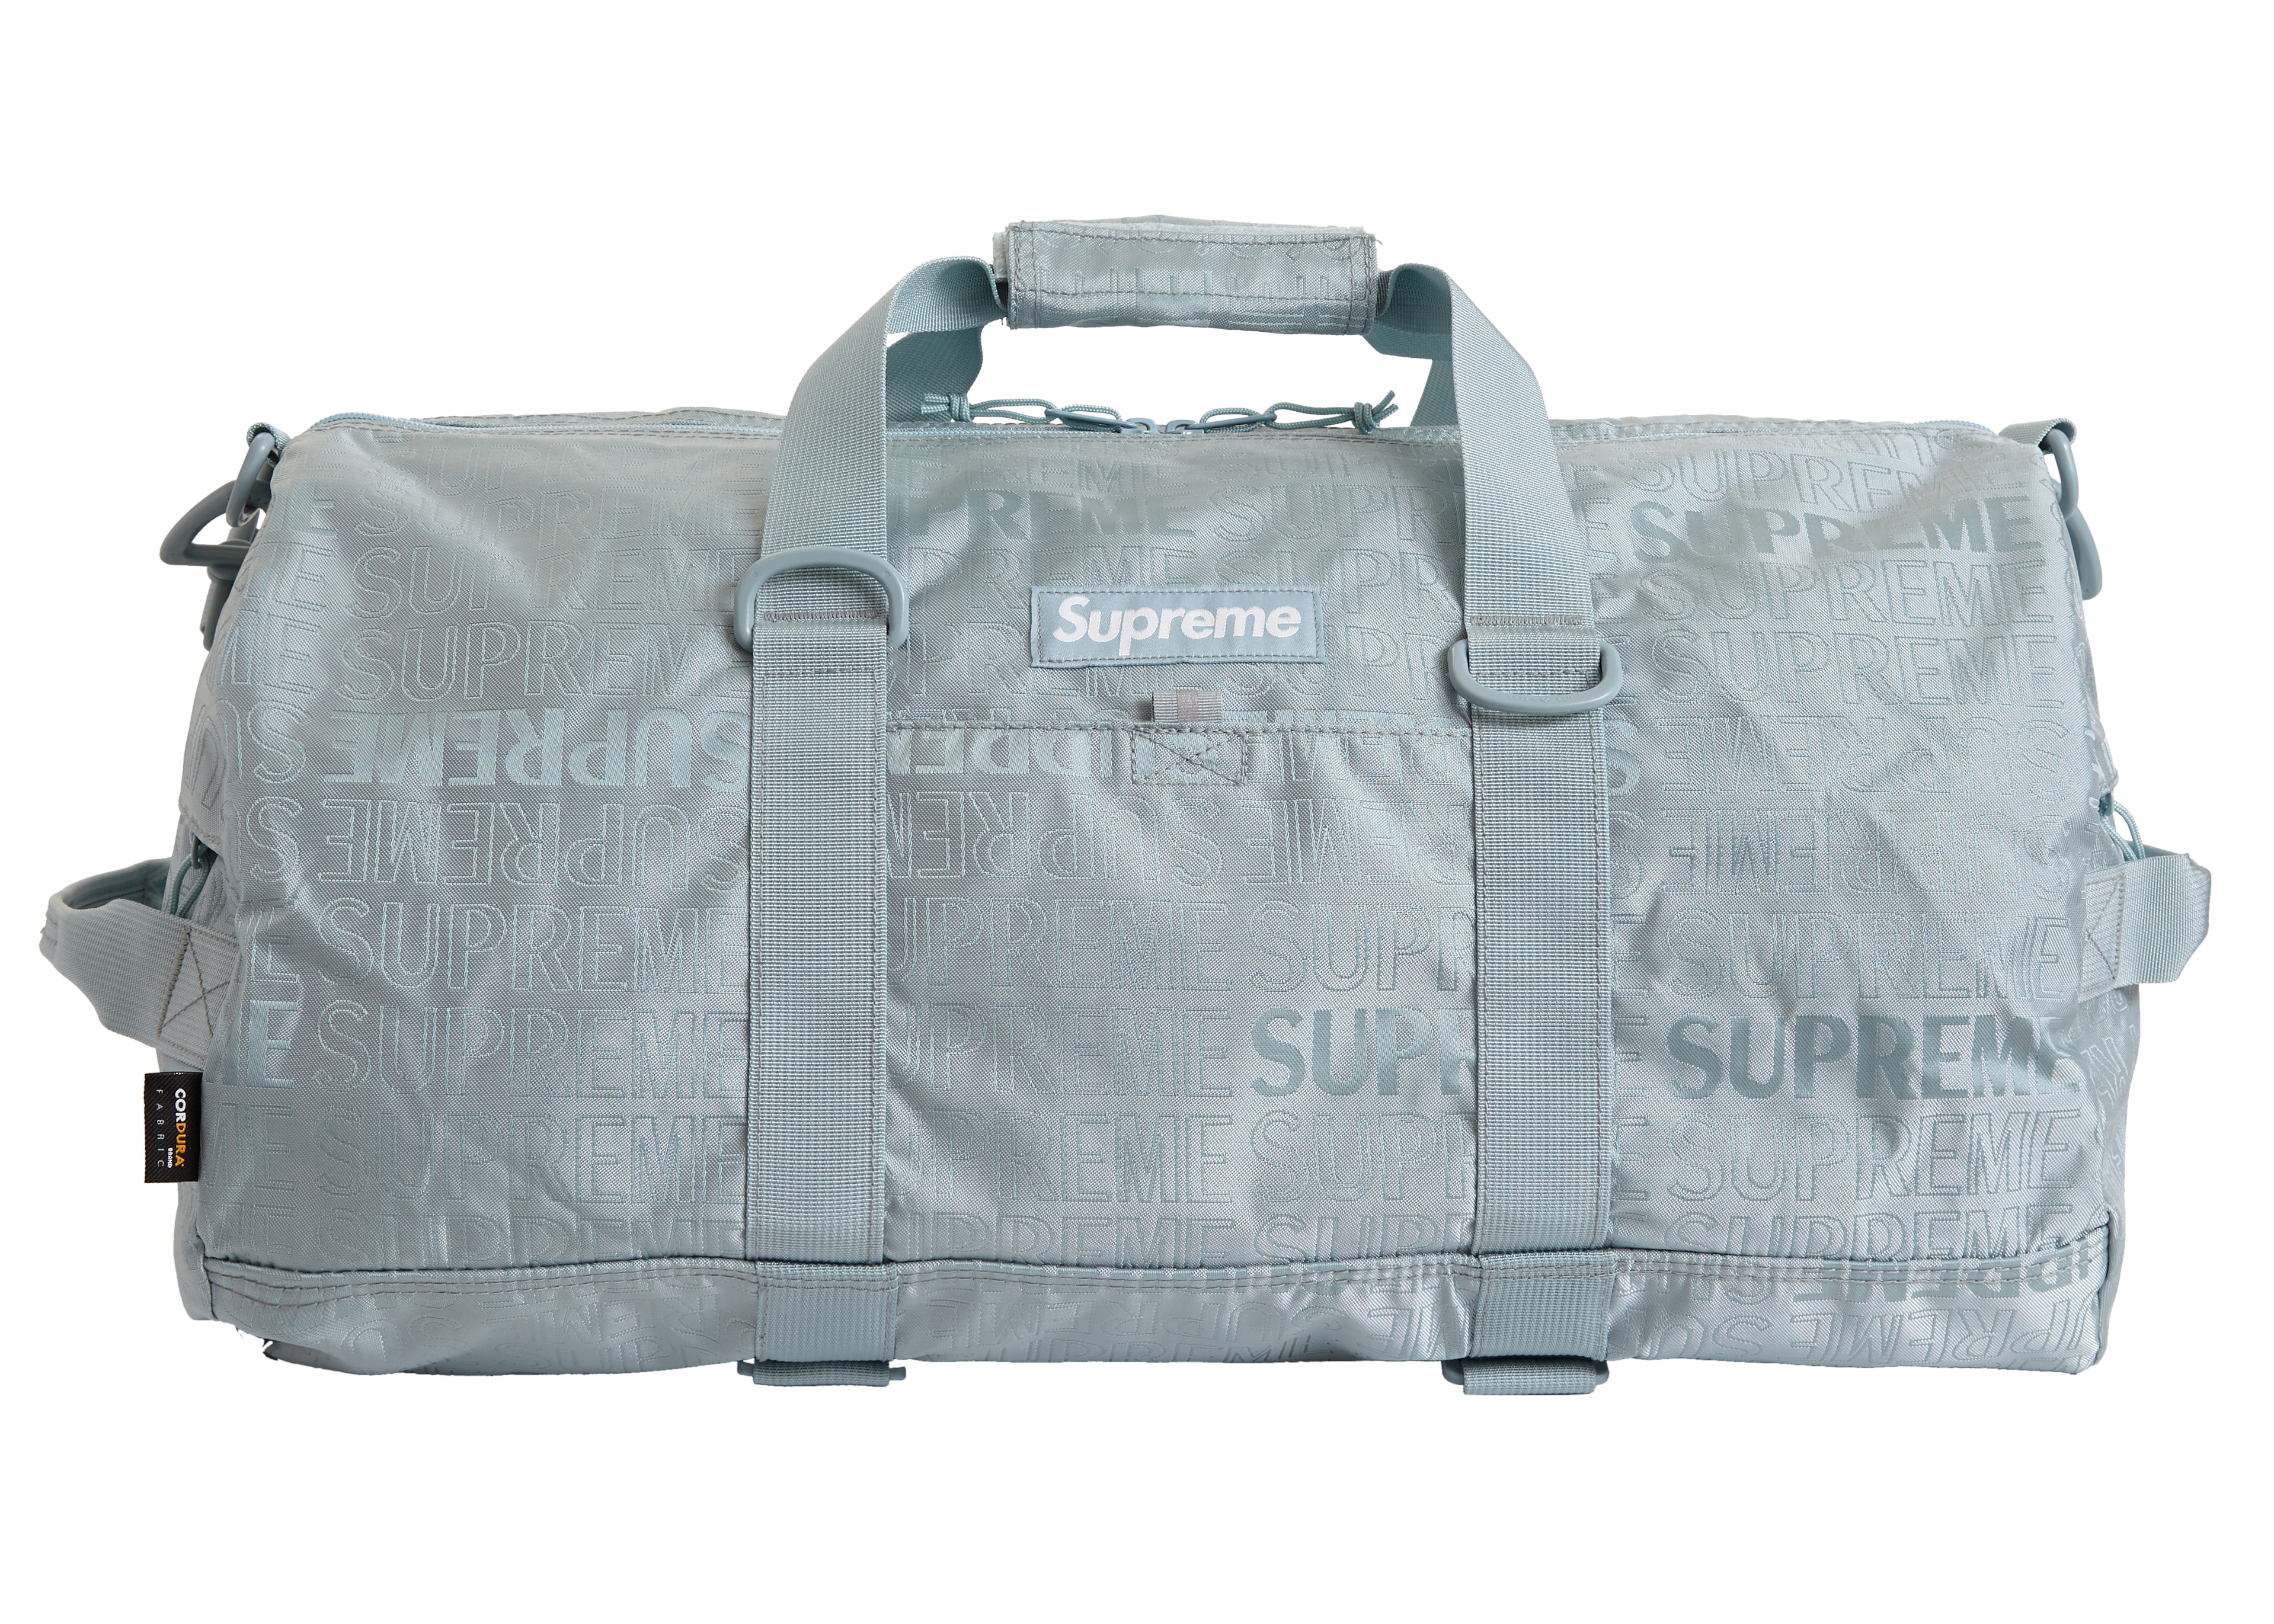 ss19 supreme duffle bag